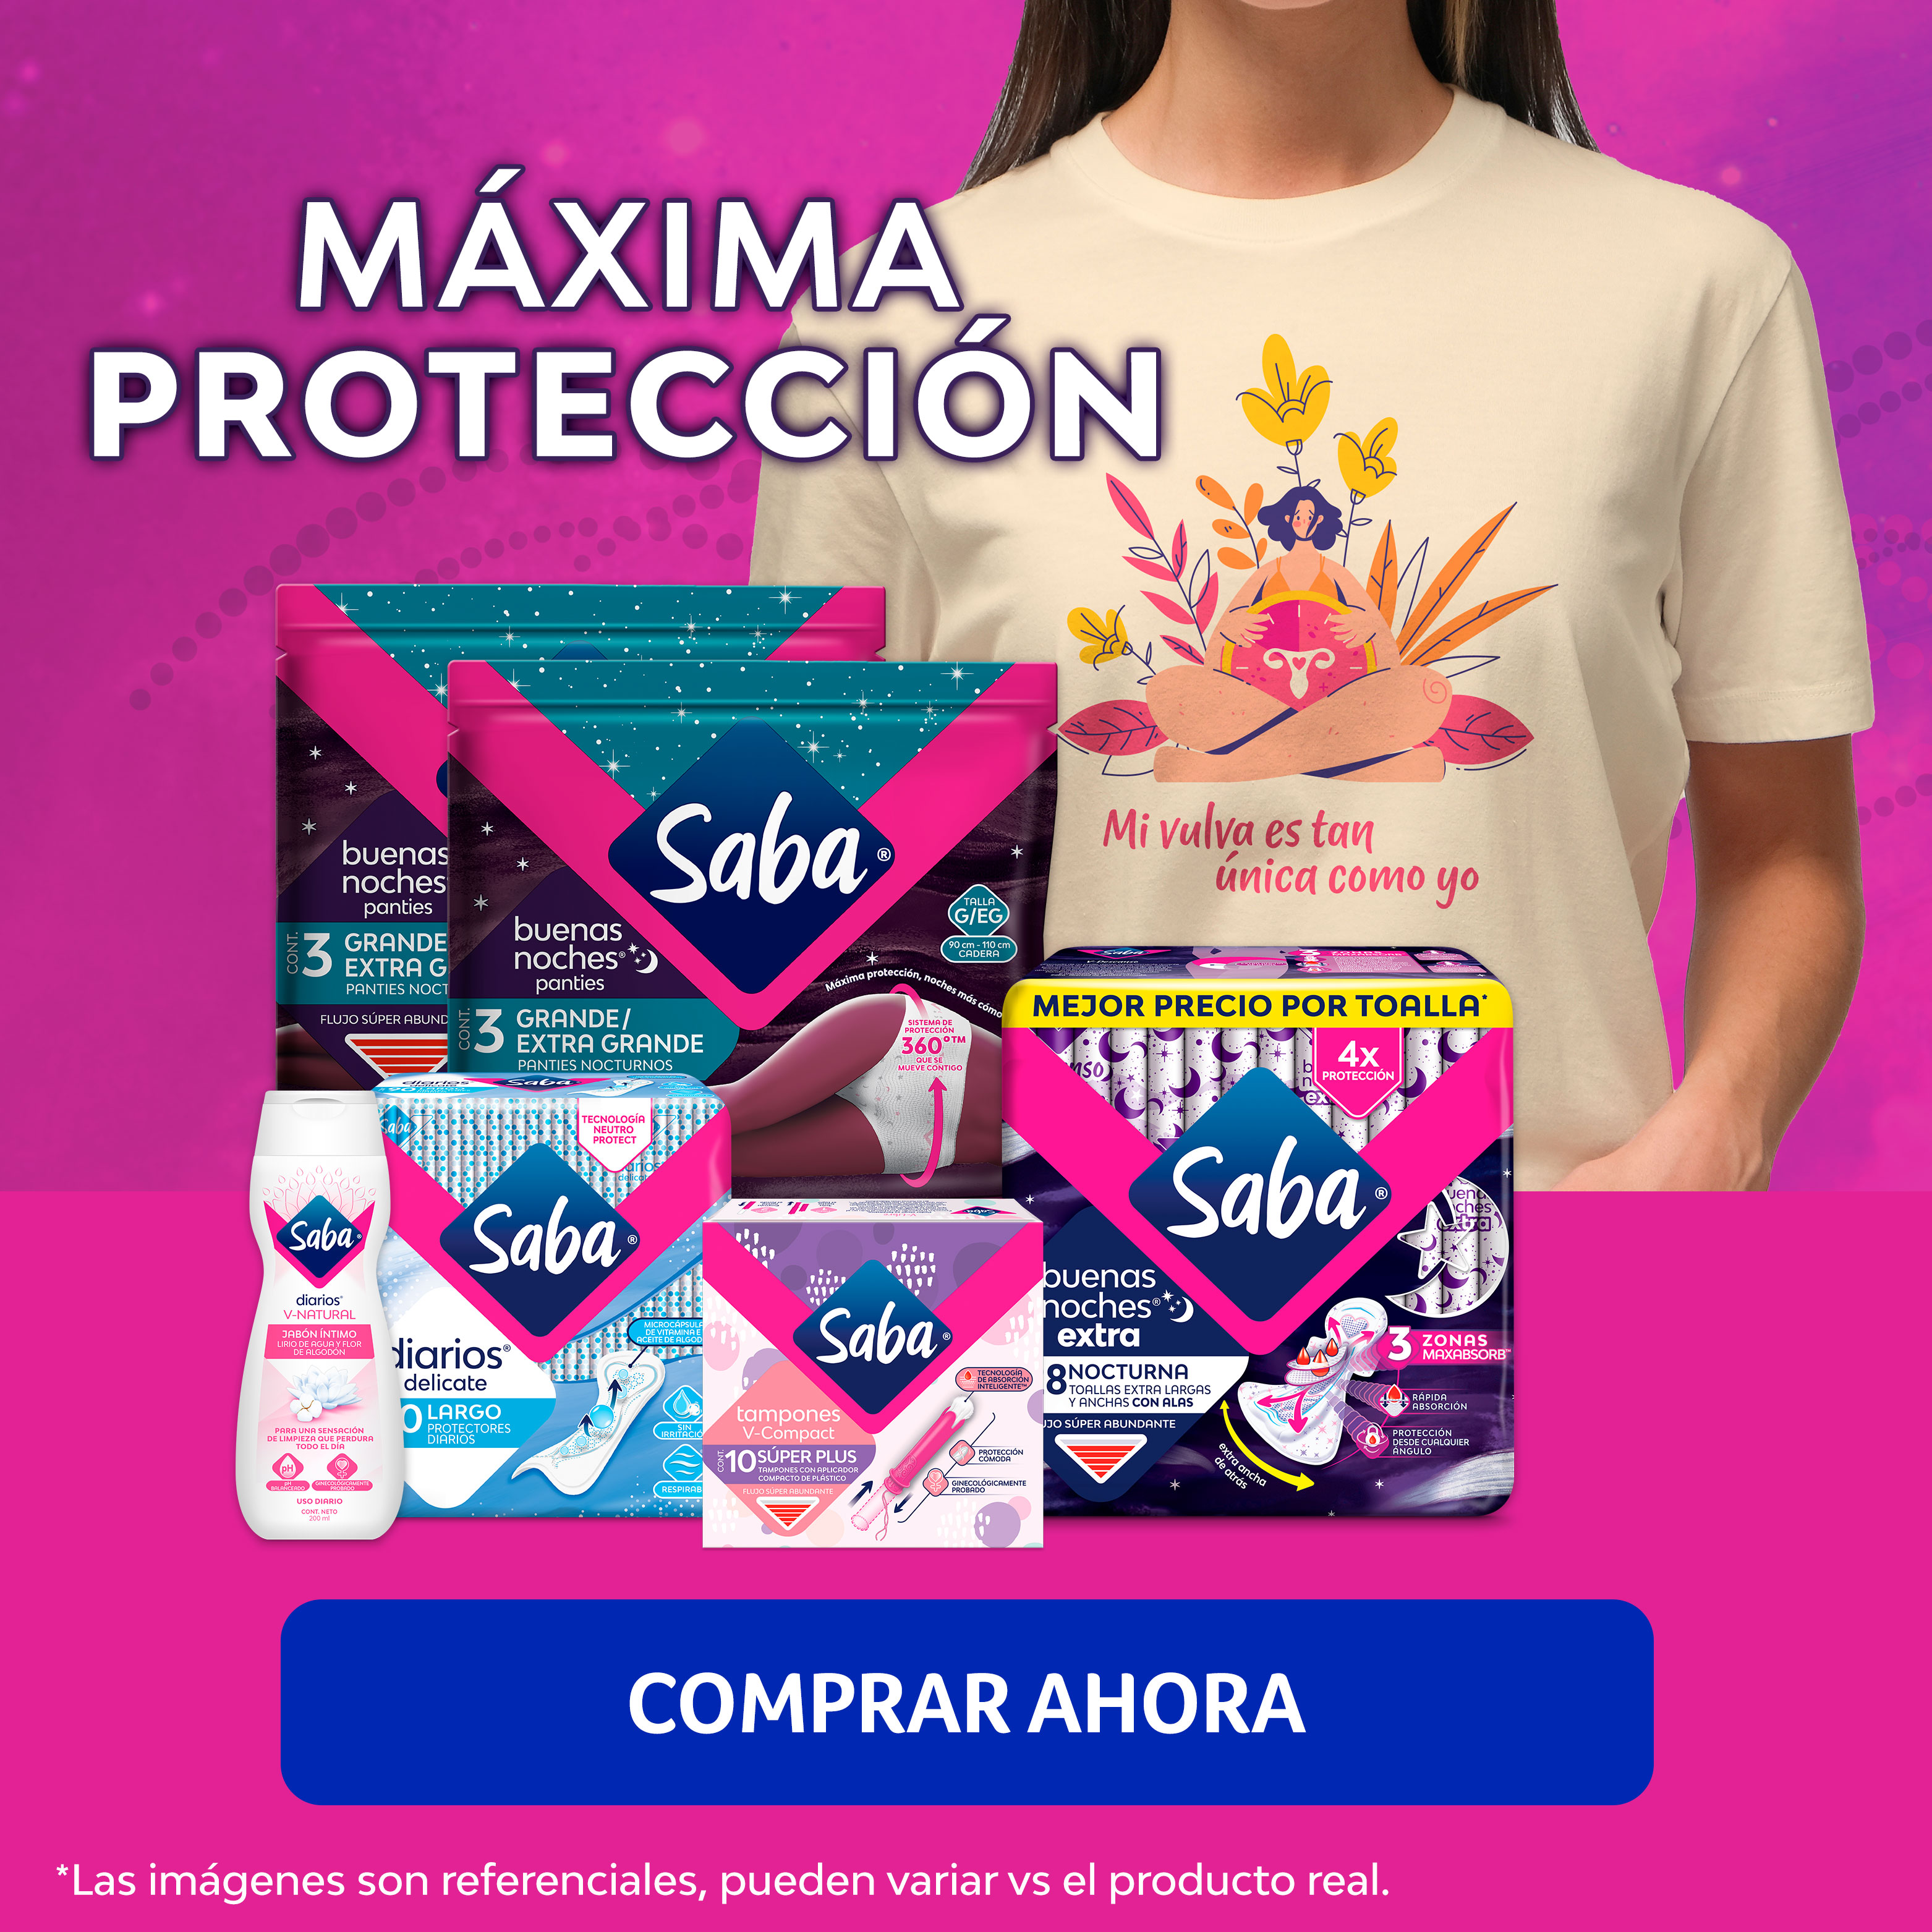 1.Maxima-Proteccion